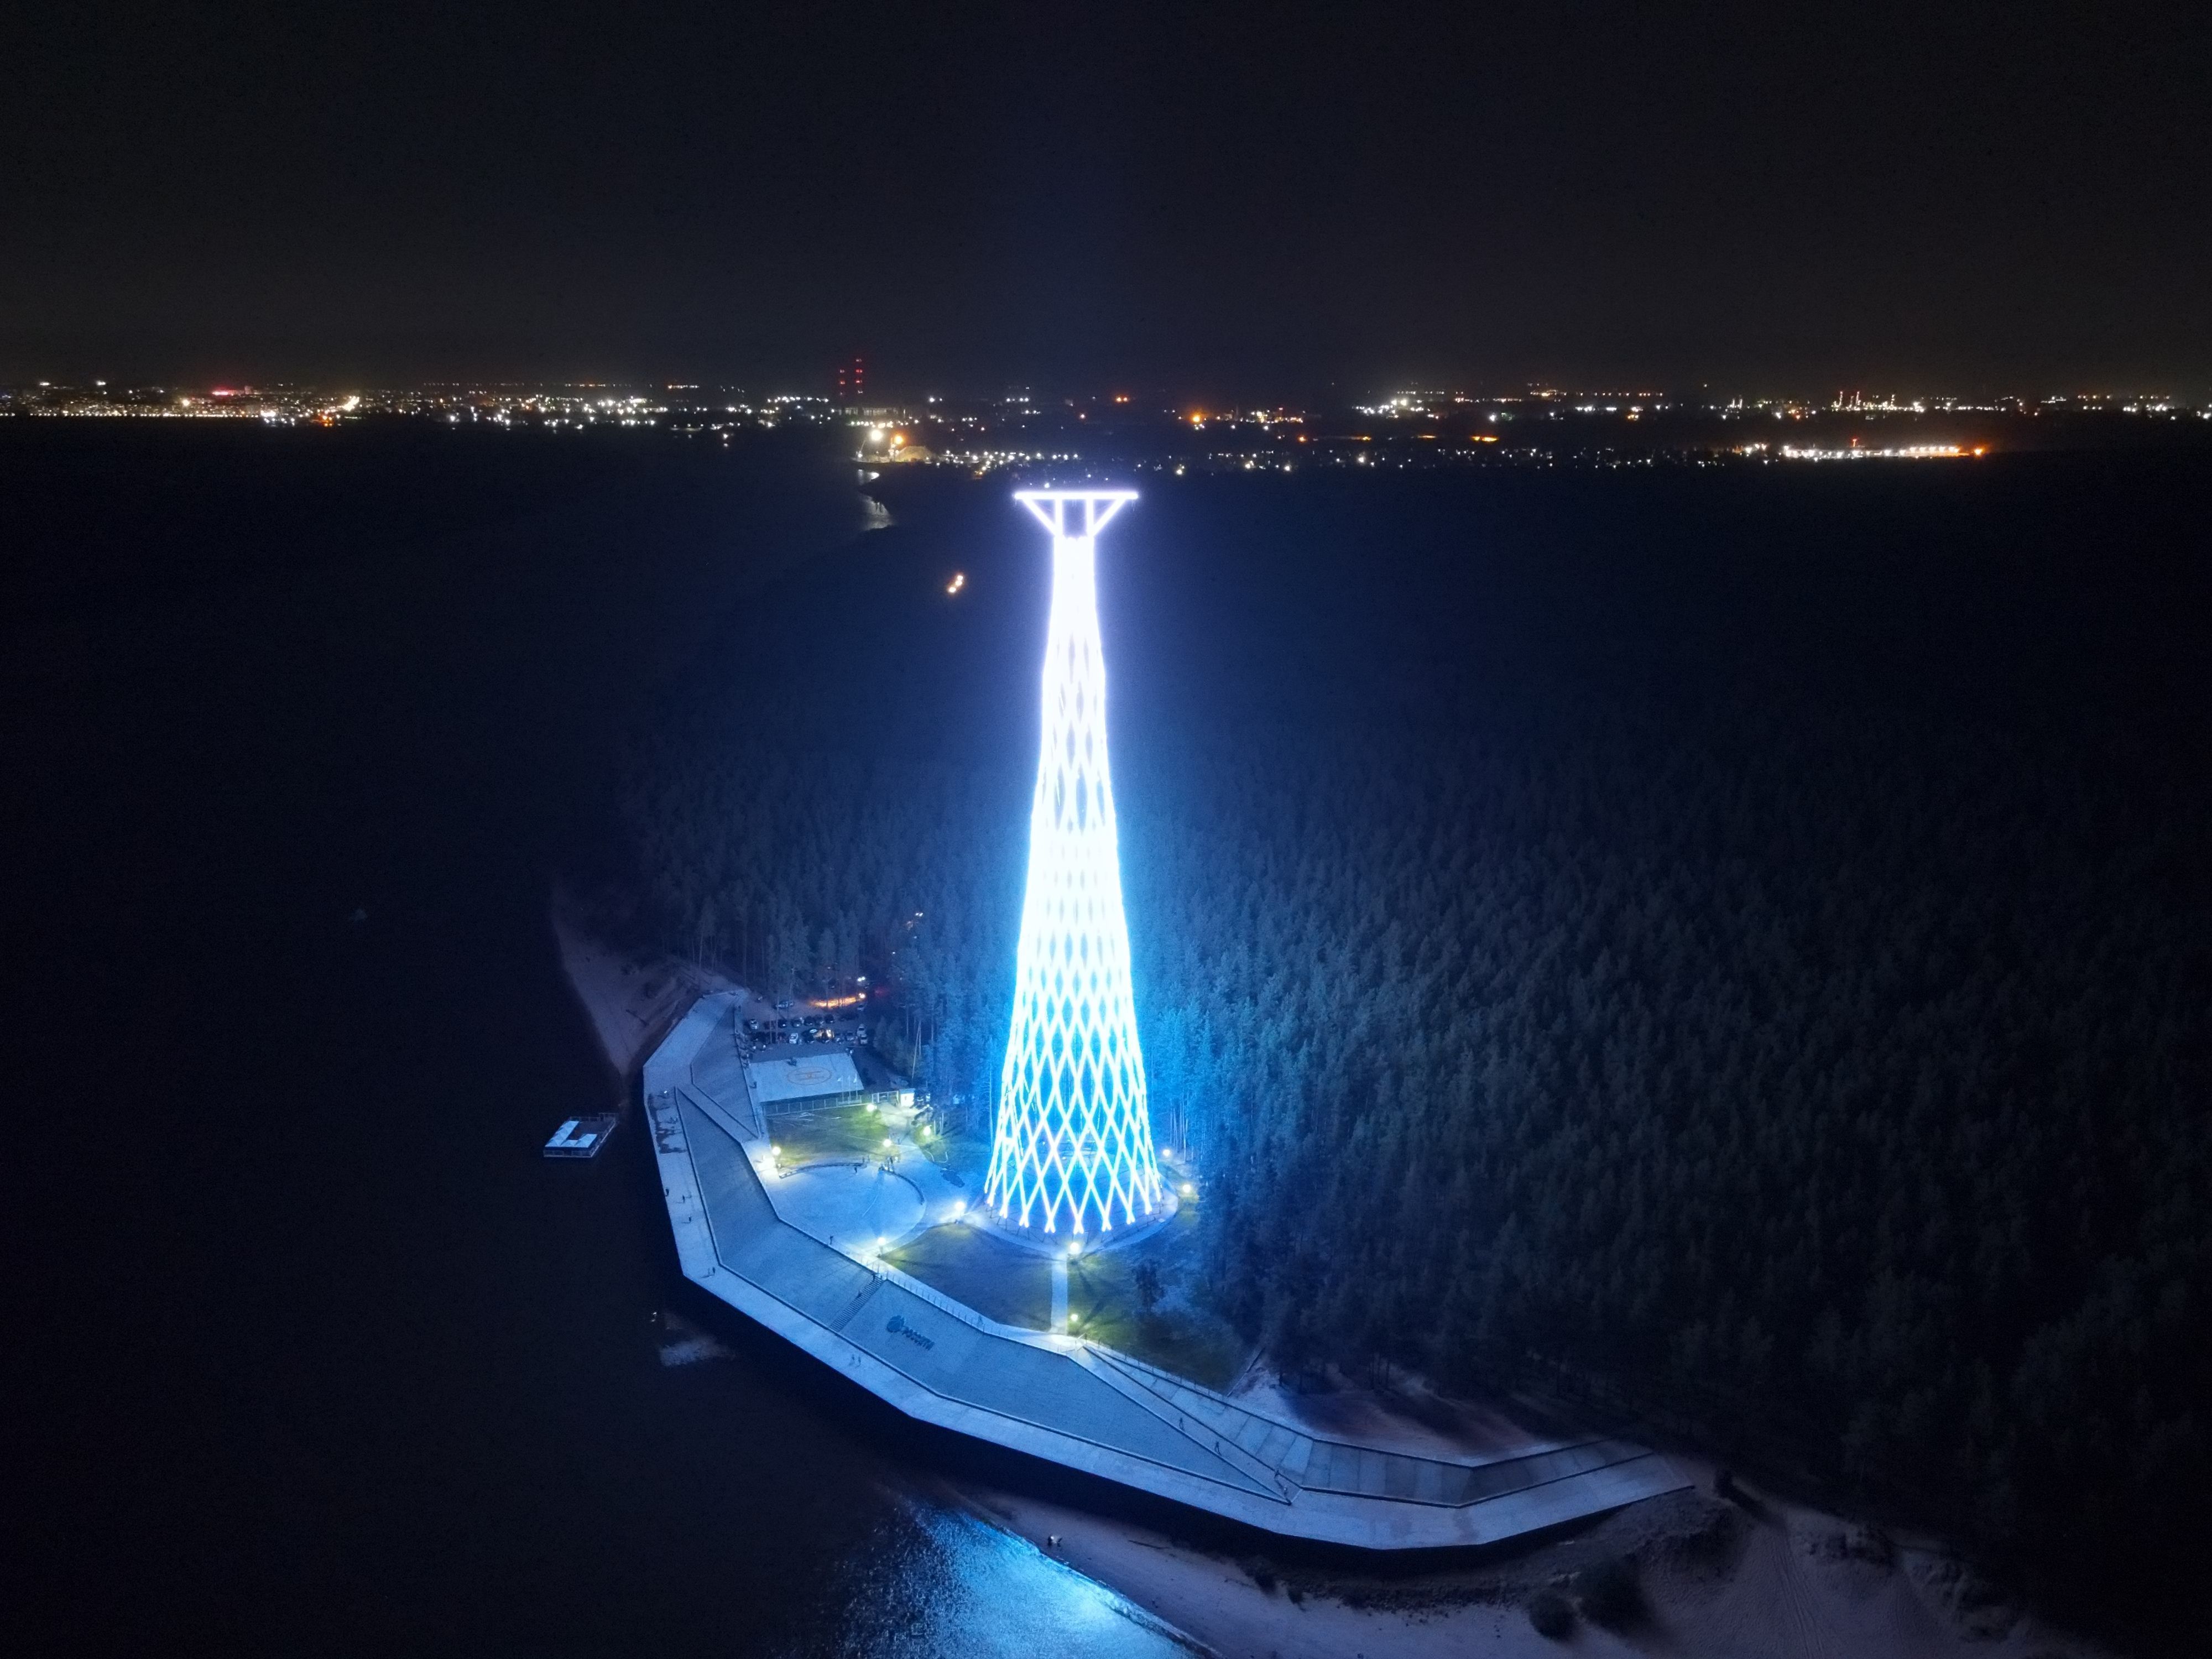 дзержинск шуховская башня подсветка